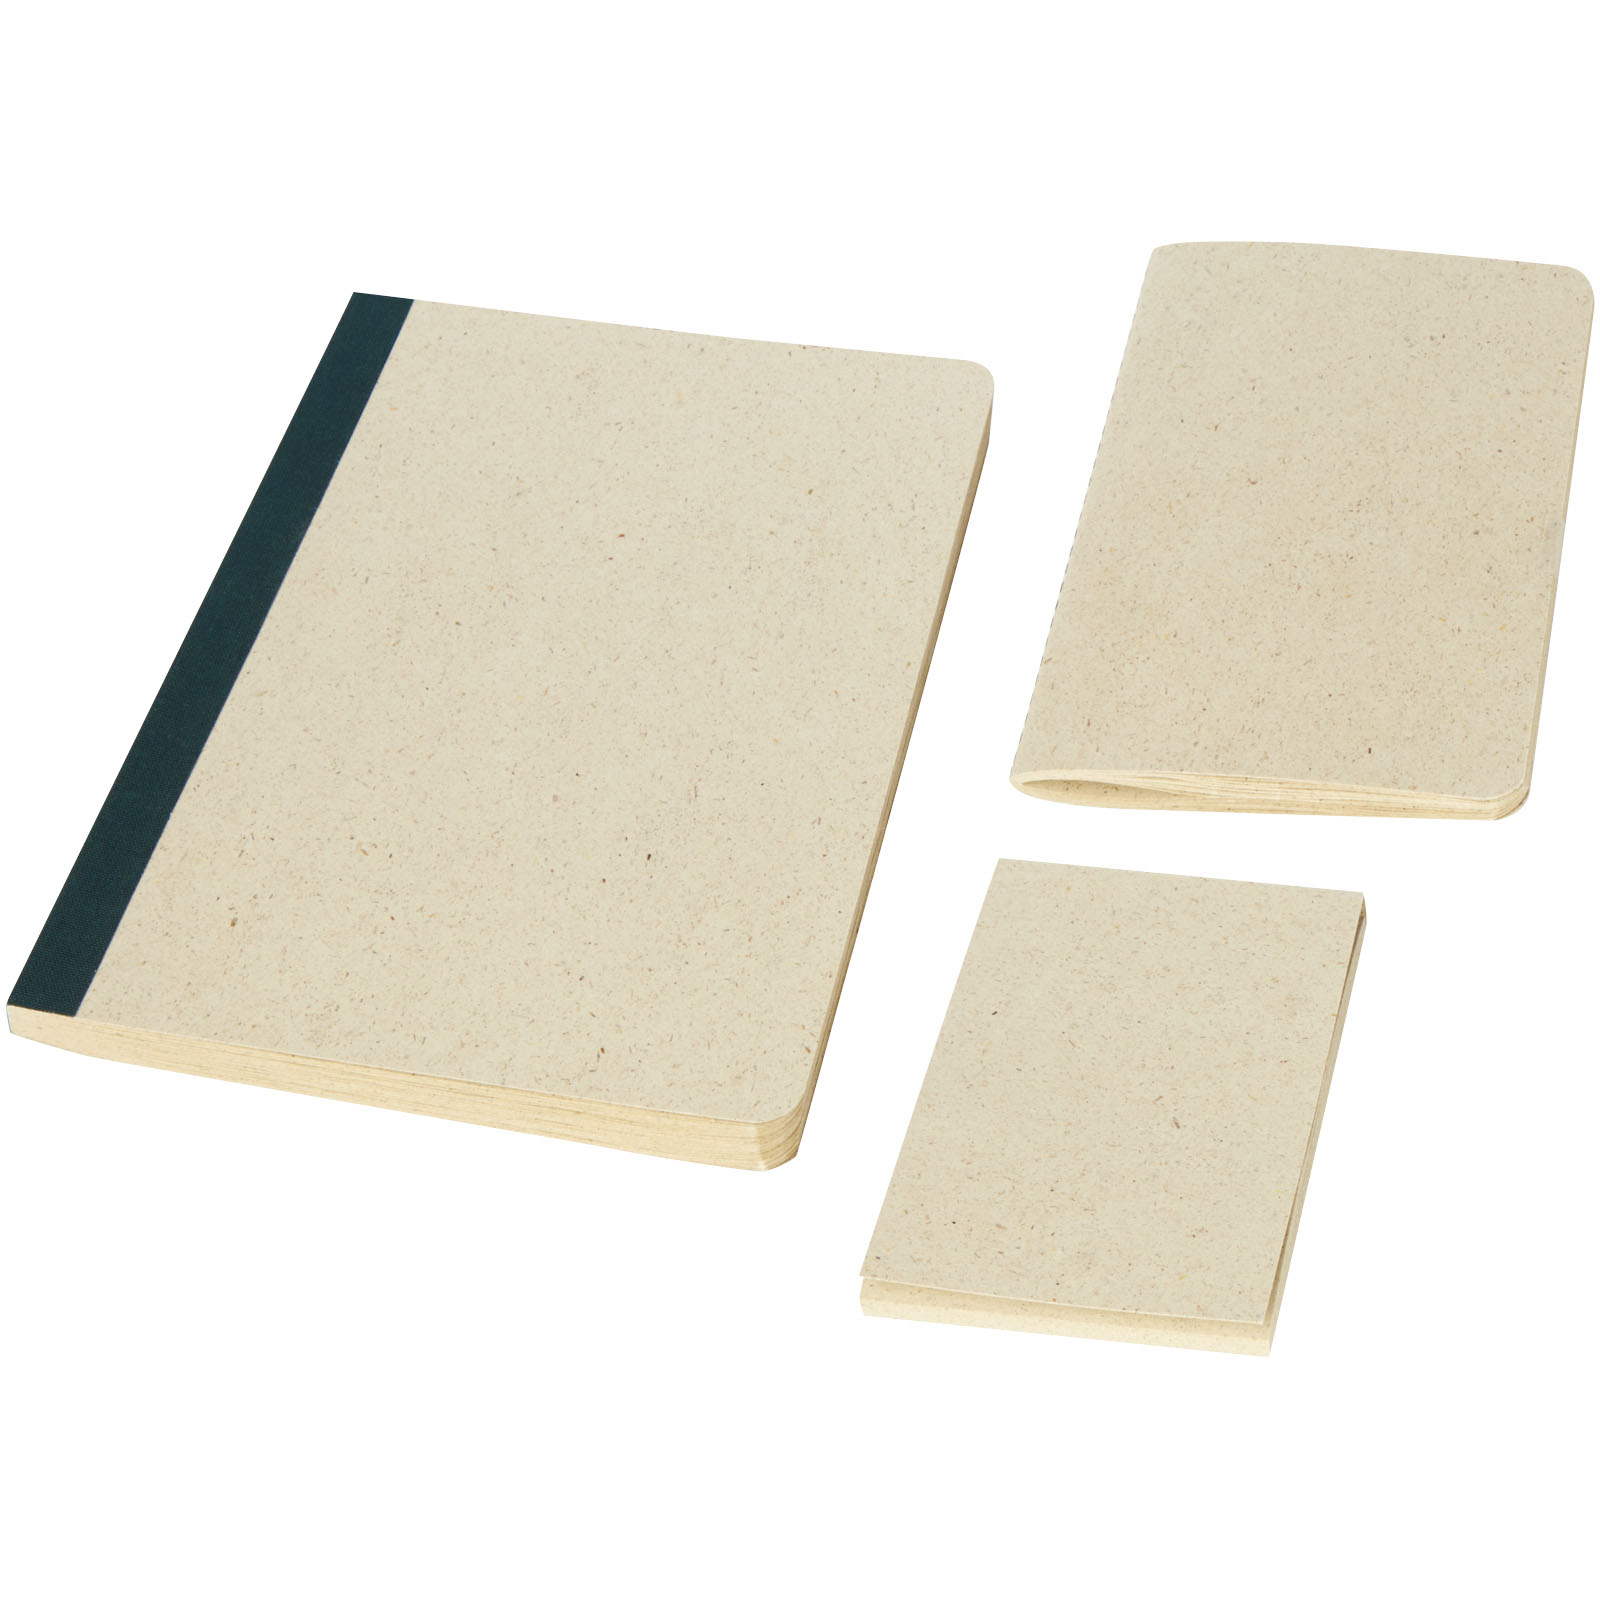 Notebooks & Desk Essentials - Verde 3-piece grass paper stationery gift set